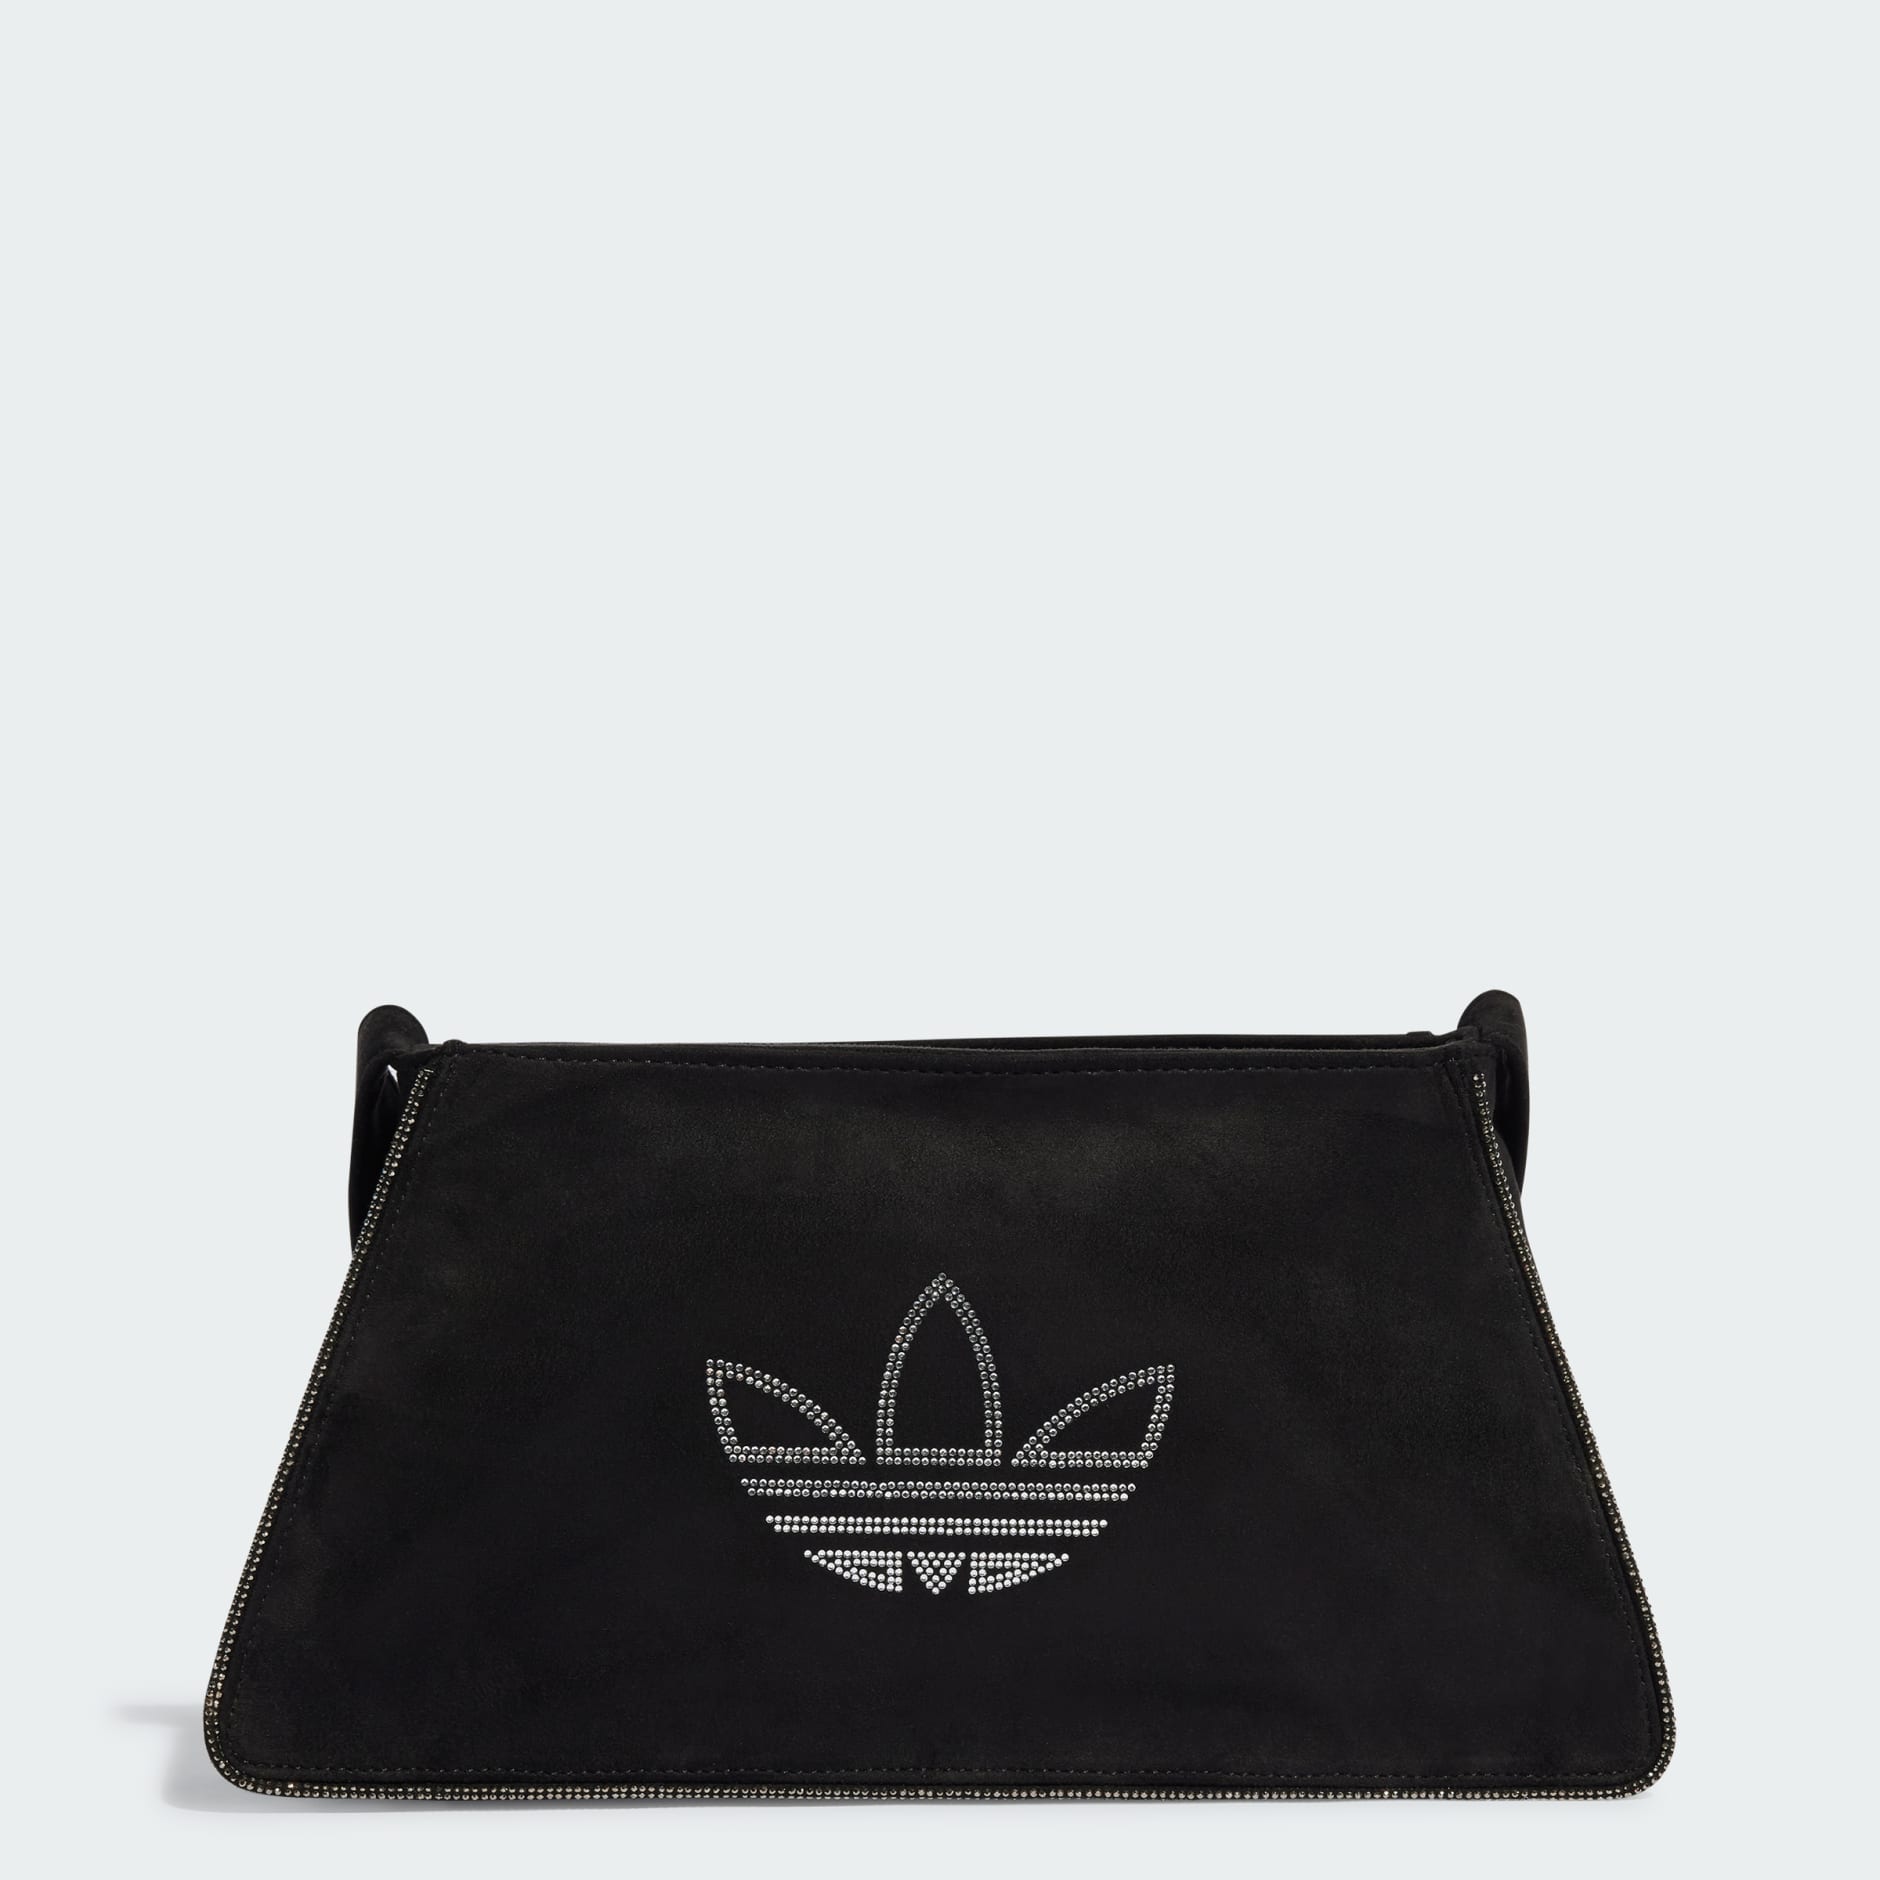 Adidas Women's Blackbird Trefoil Red Clutch Bag-Gift for Her-Birthday Gift  | eBay